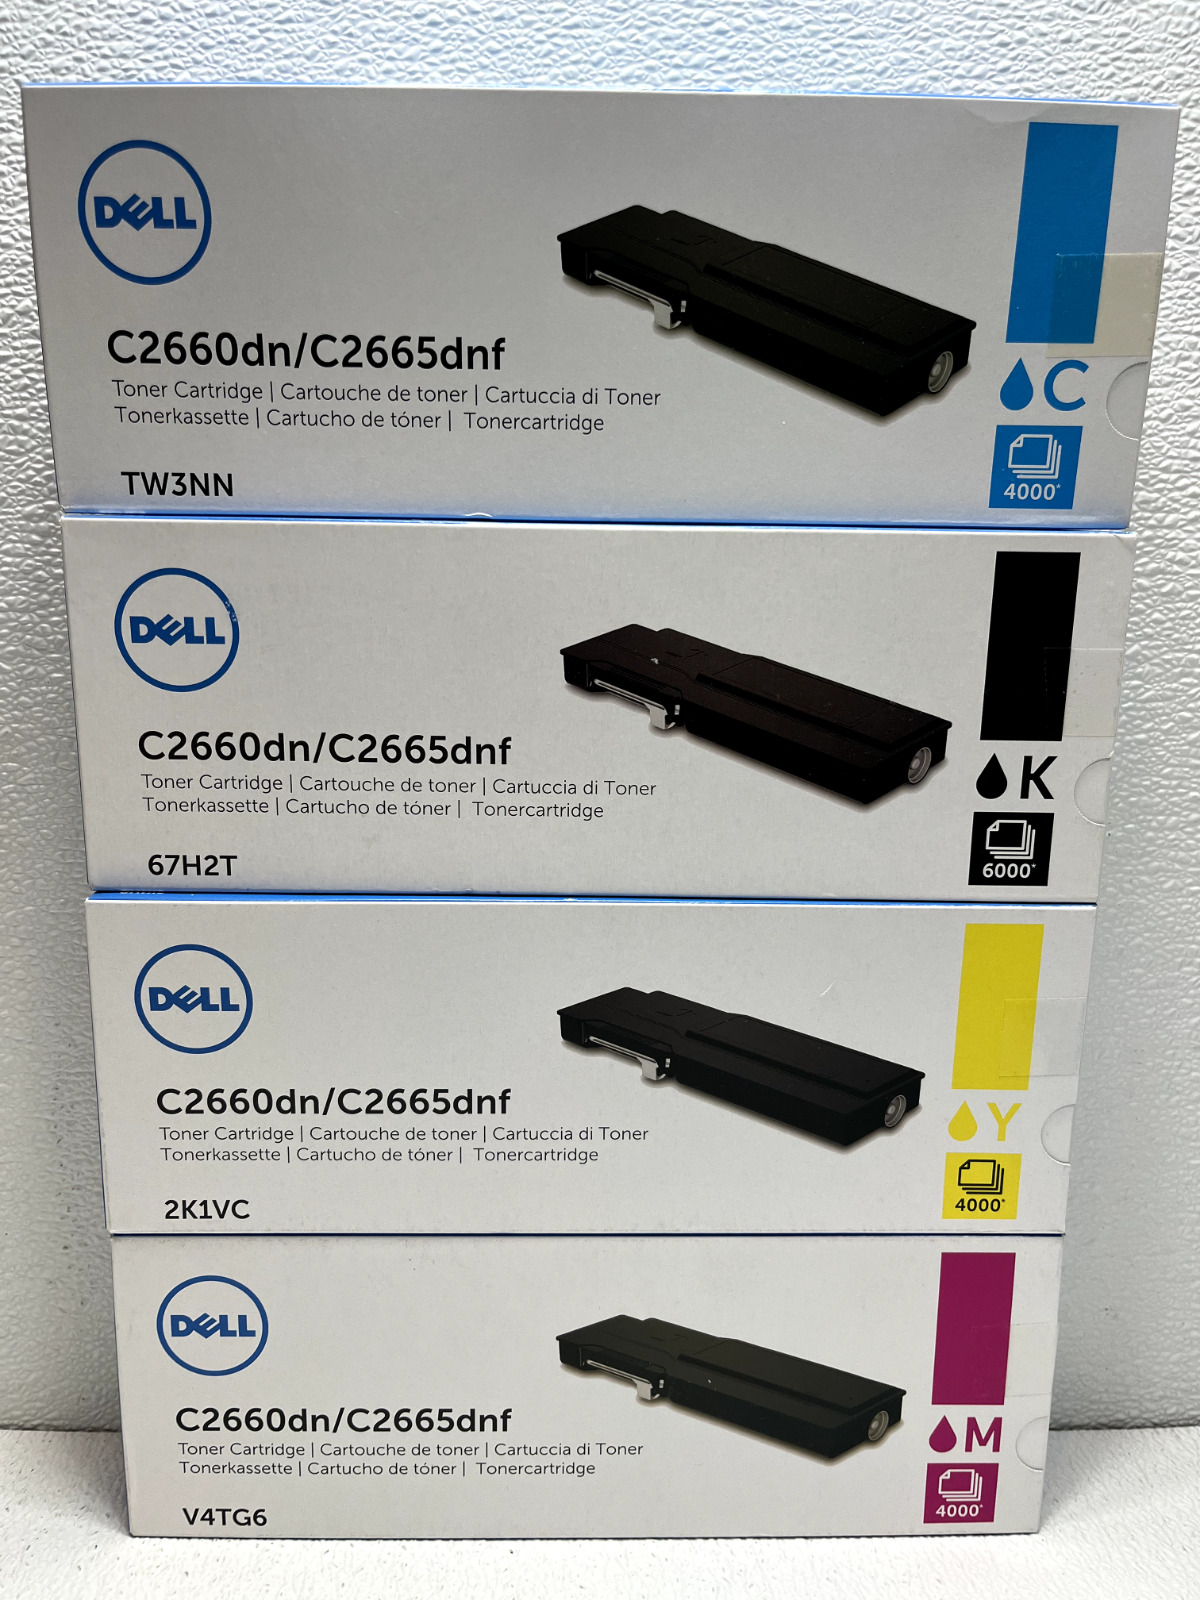 Genuine Dell C2660dn & C2665dnf Toner Cartridge Set V4TG6 2K1VC 67H2T TW3NN